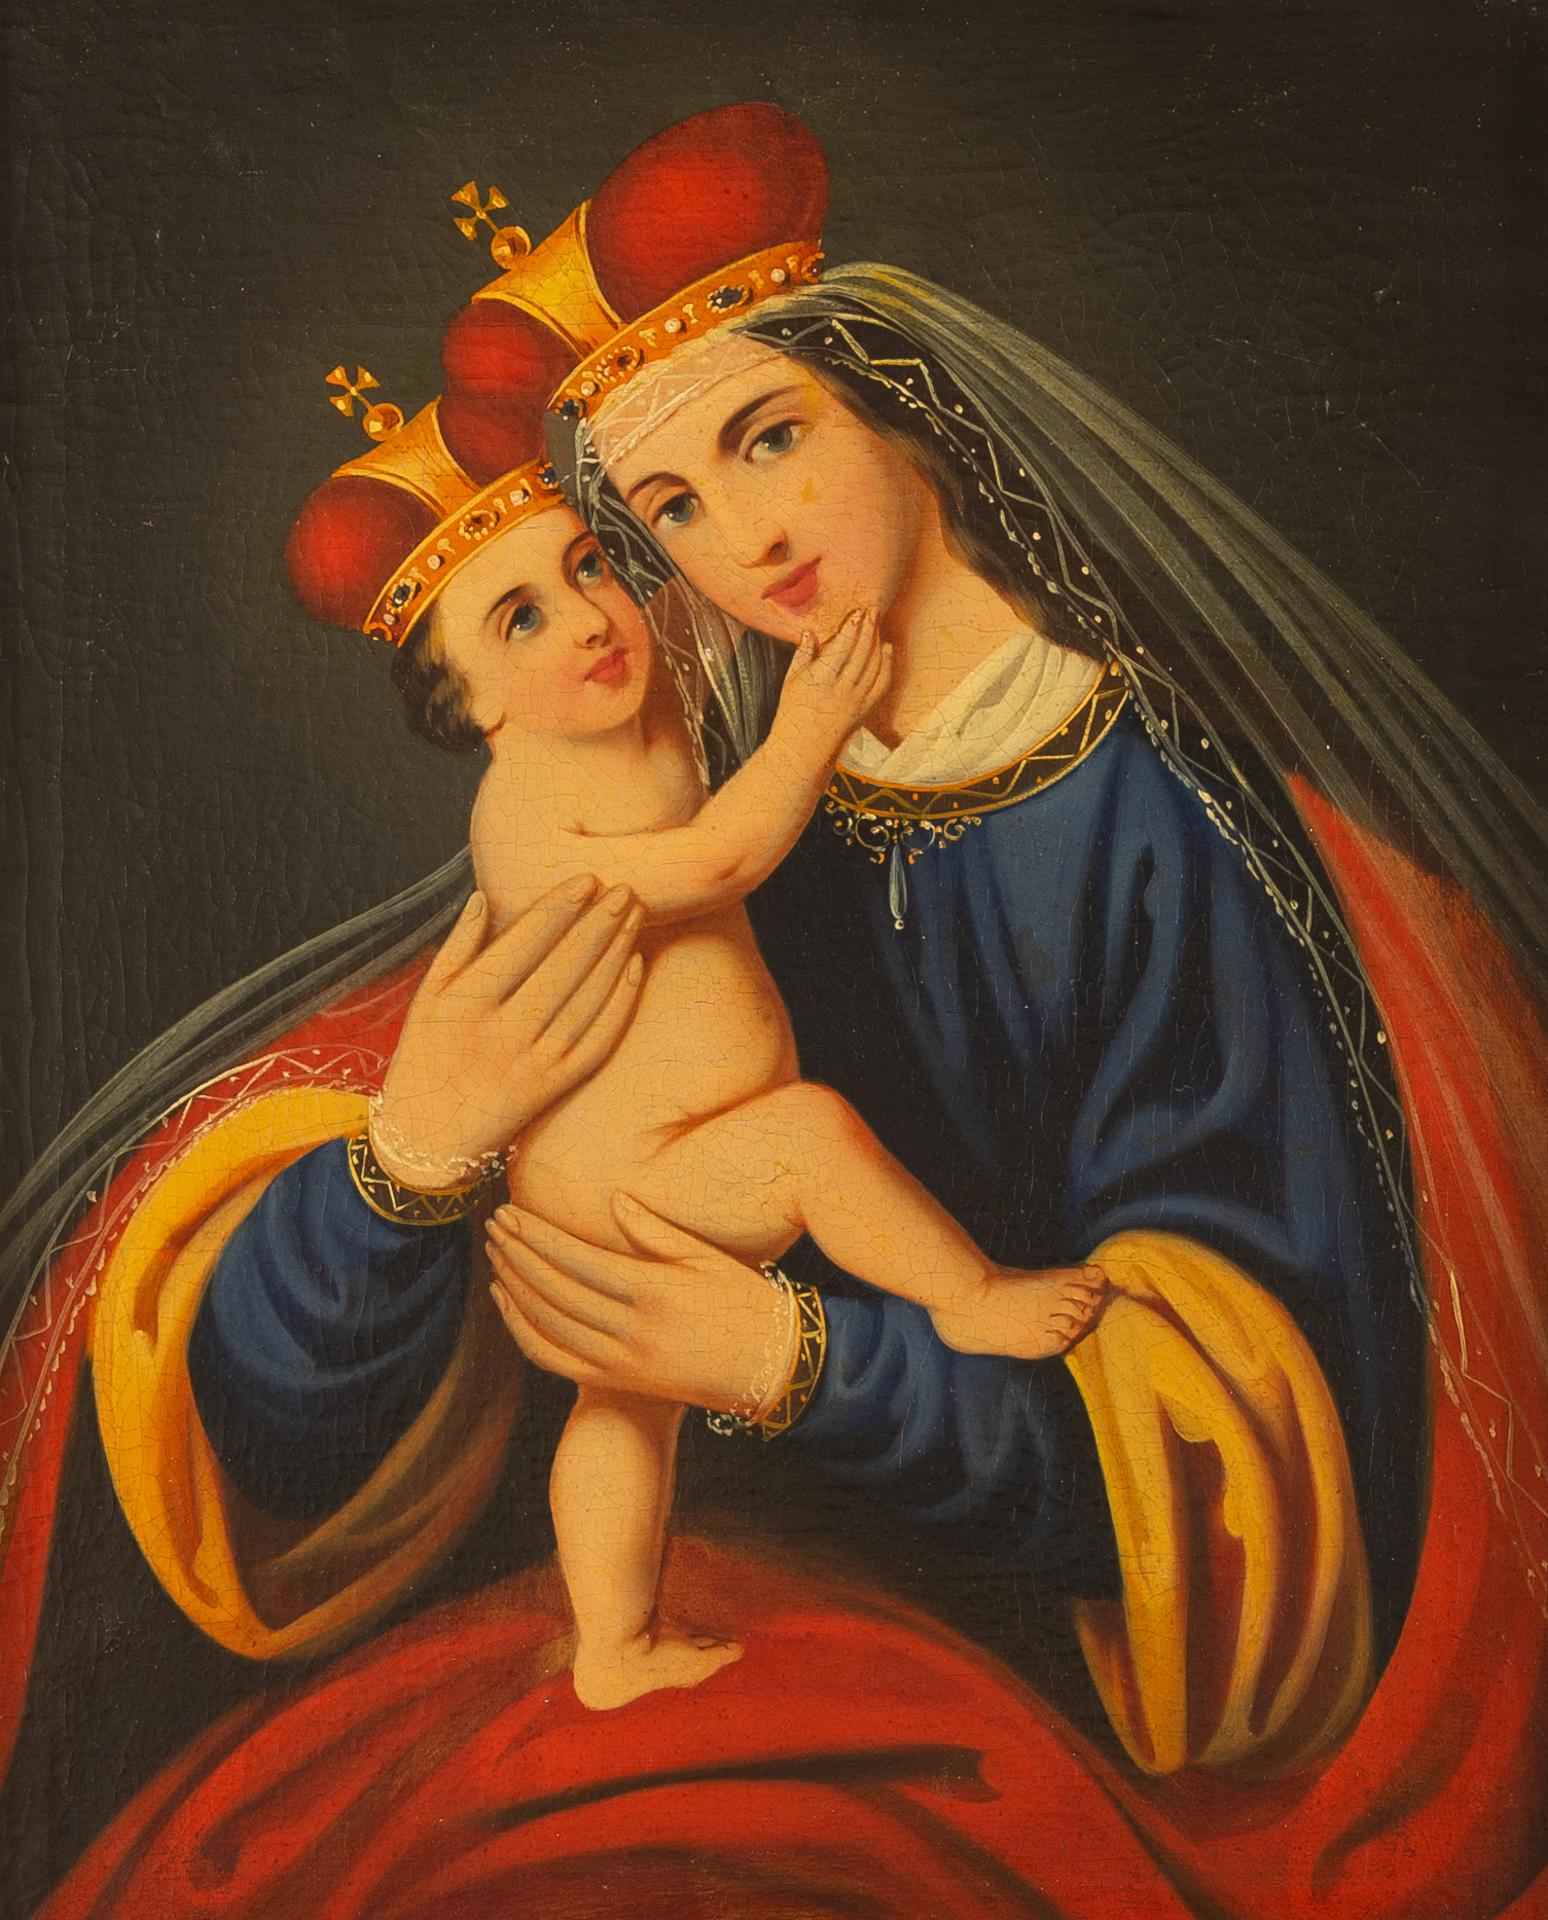 Cette peinture provient de Polland et a plus de 200 ans.  Huile sur toile avec petites restaurations : n'oublions pas qu'il y a eu deux guerres mondiales en Europe.
Une belle Madone et son enfant, tous deux avec de beaux yeux bleus.
